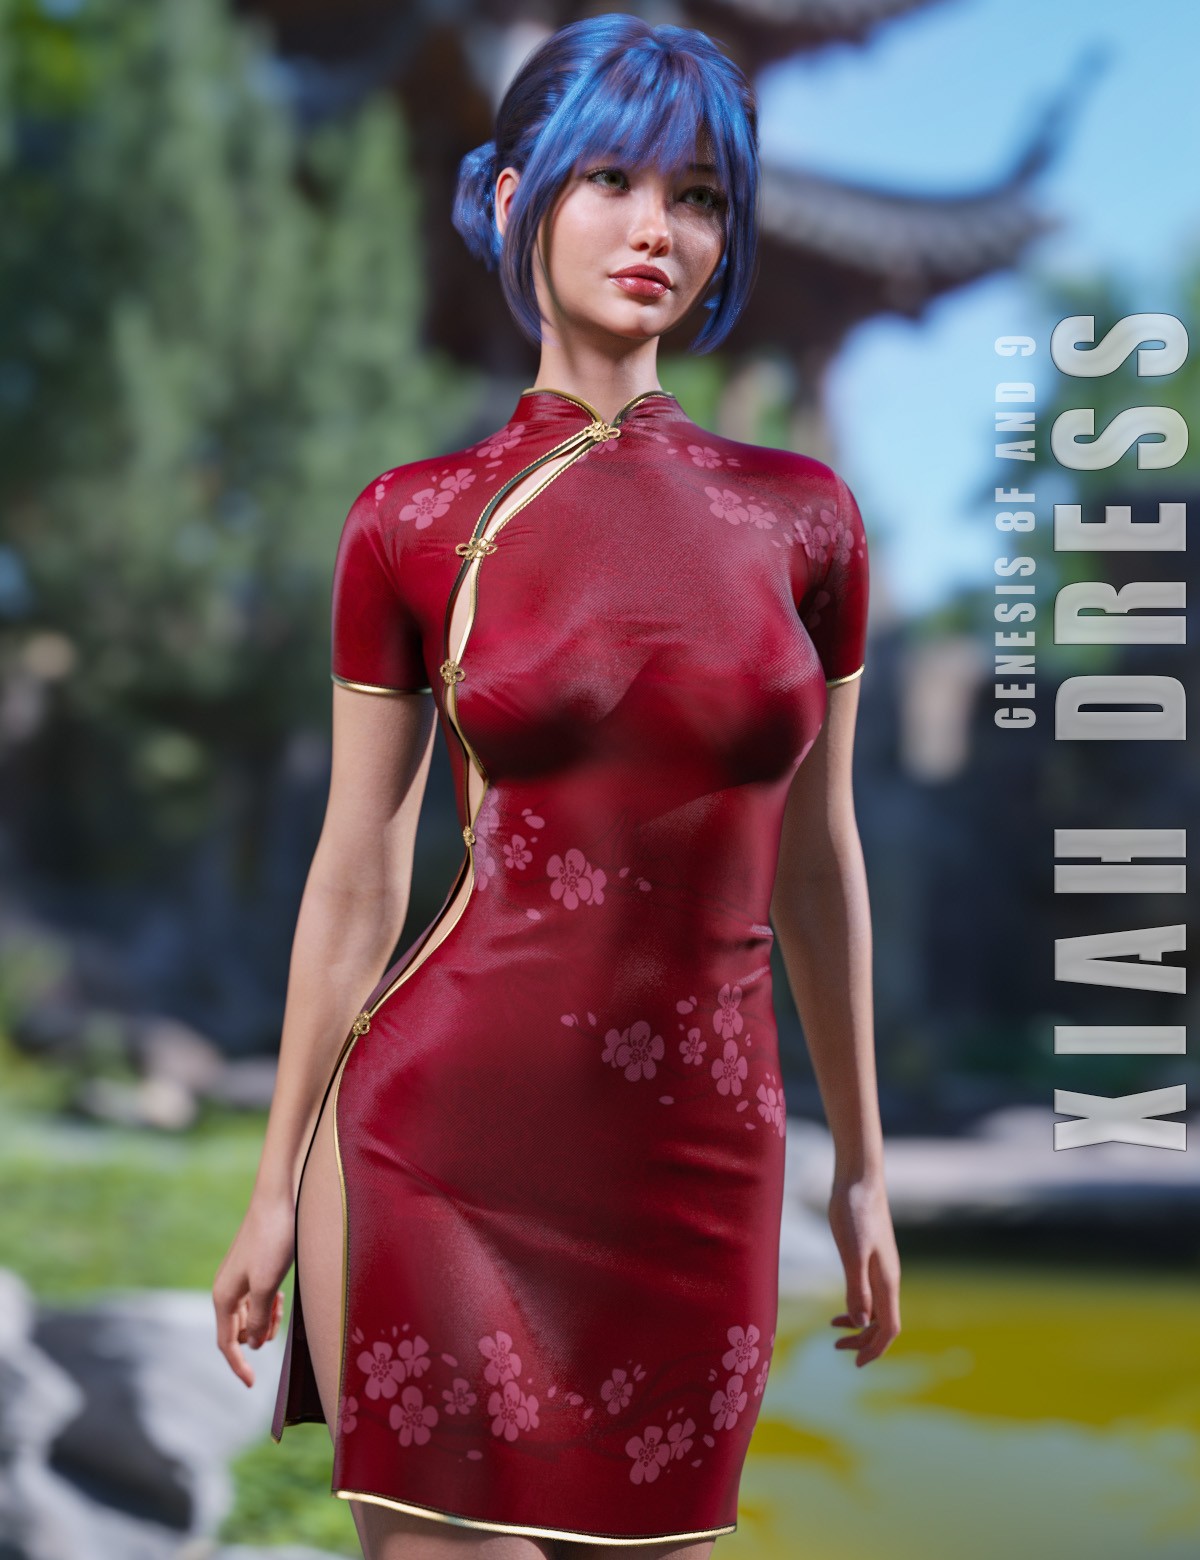 dForce Xiah Dress Genesis 8-8.1F and G9 (Repost)